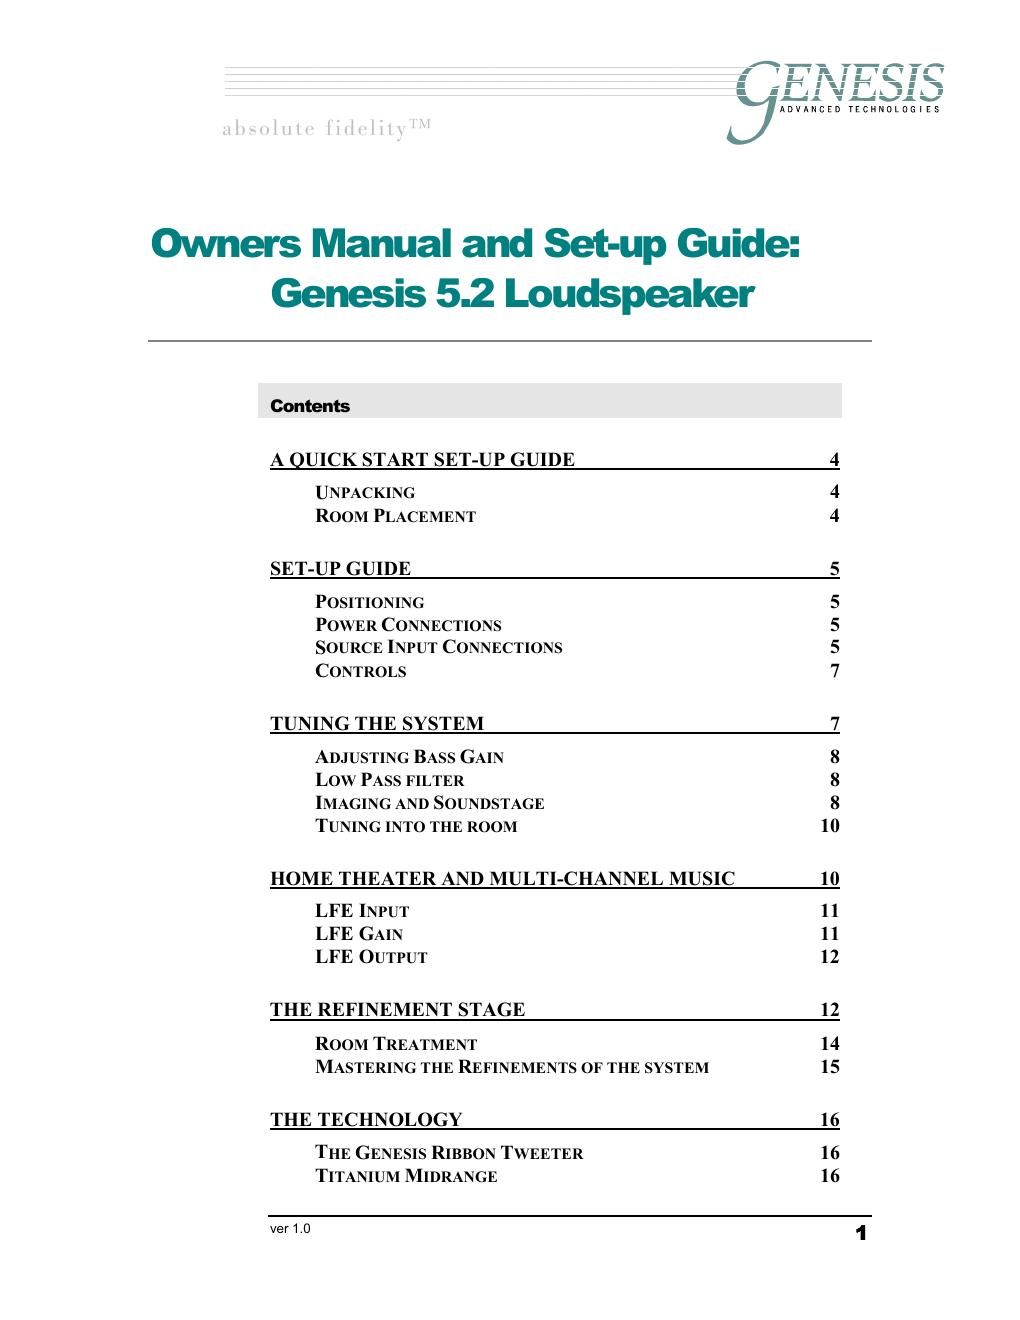 genesis g 5 2 owners manual